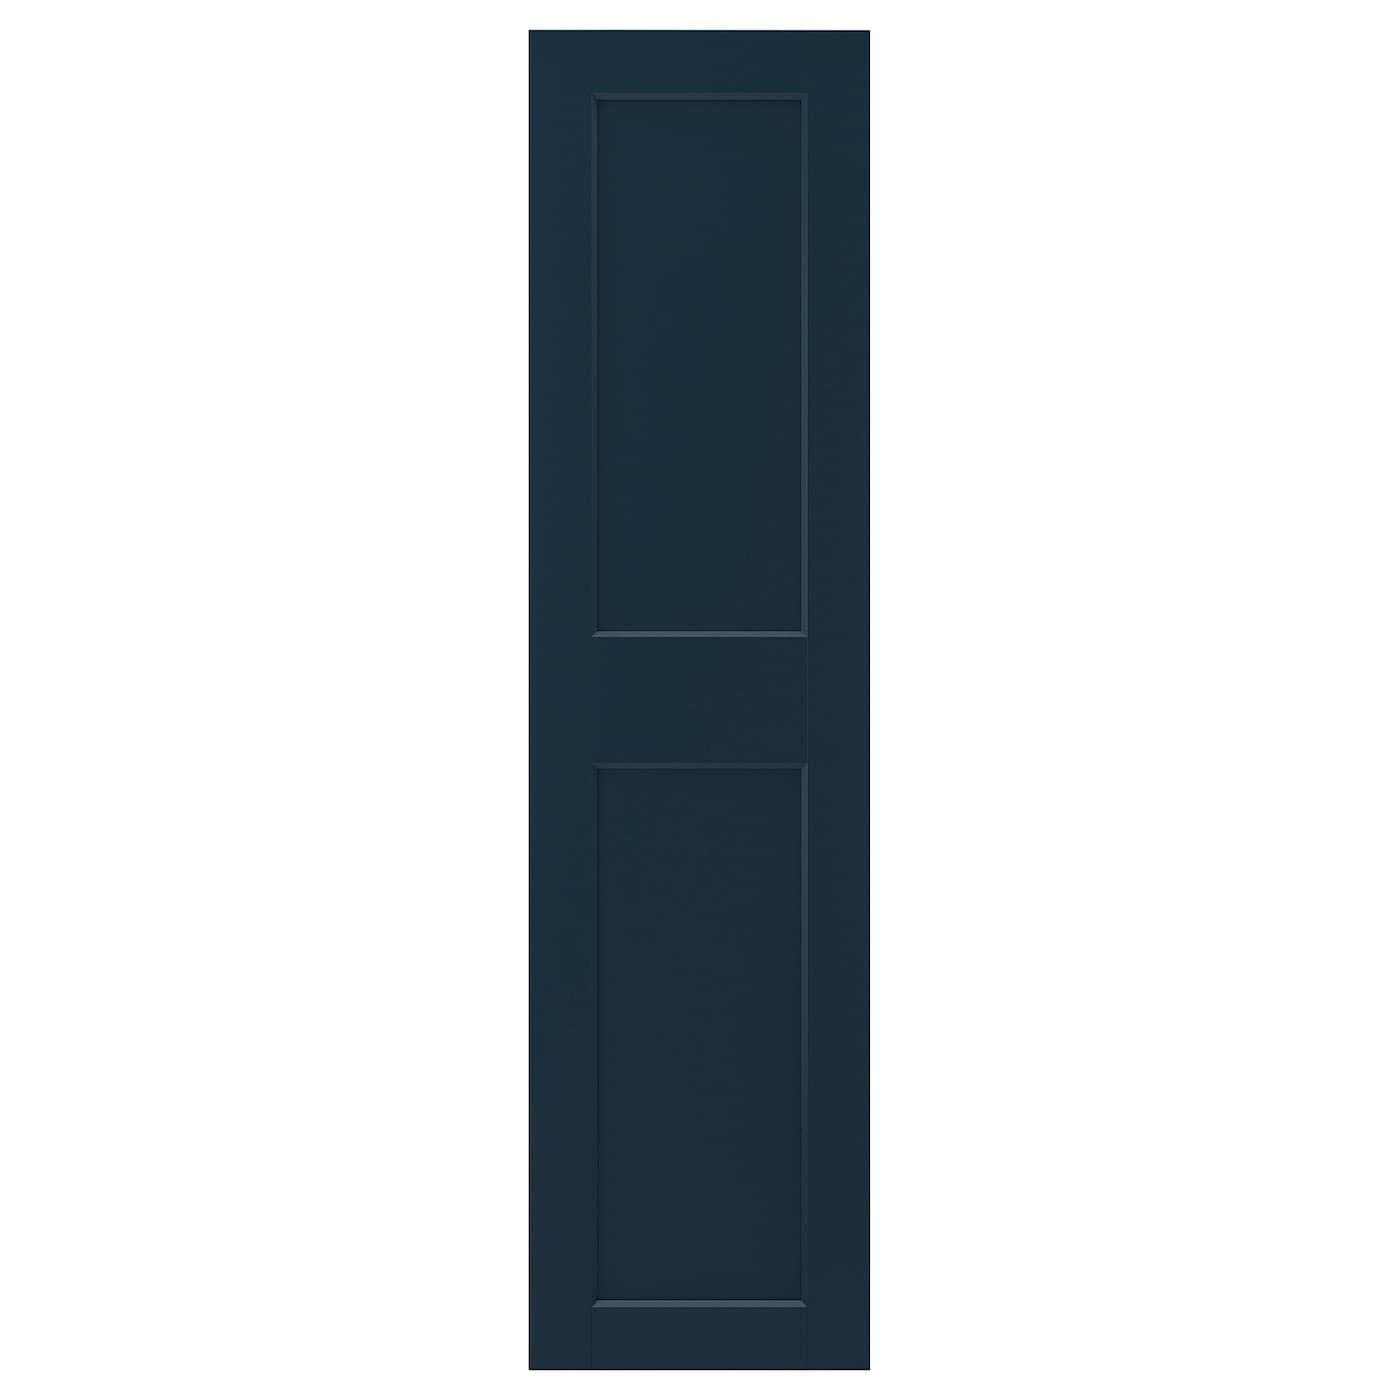 Дверца гардероба - GRIMO  IKEA/ ГРИМО ИКЕА, 50х195 см, темно-синий